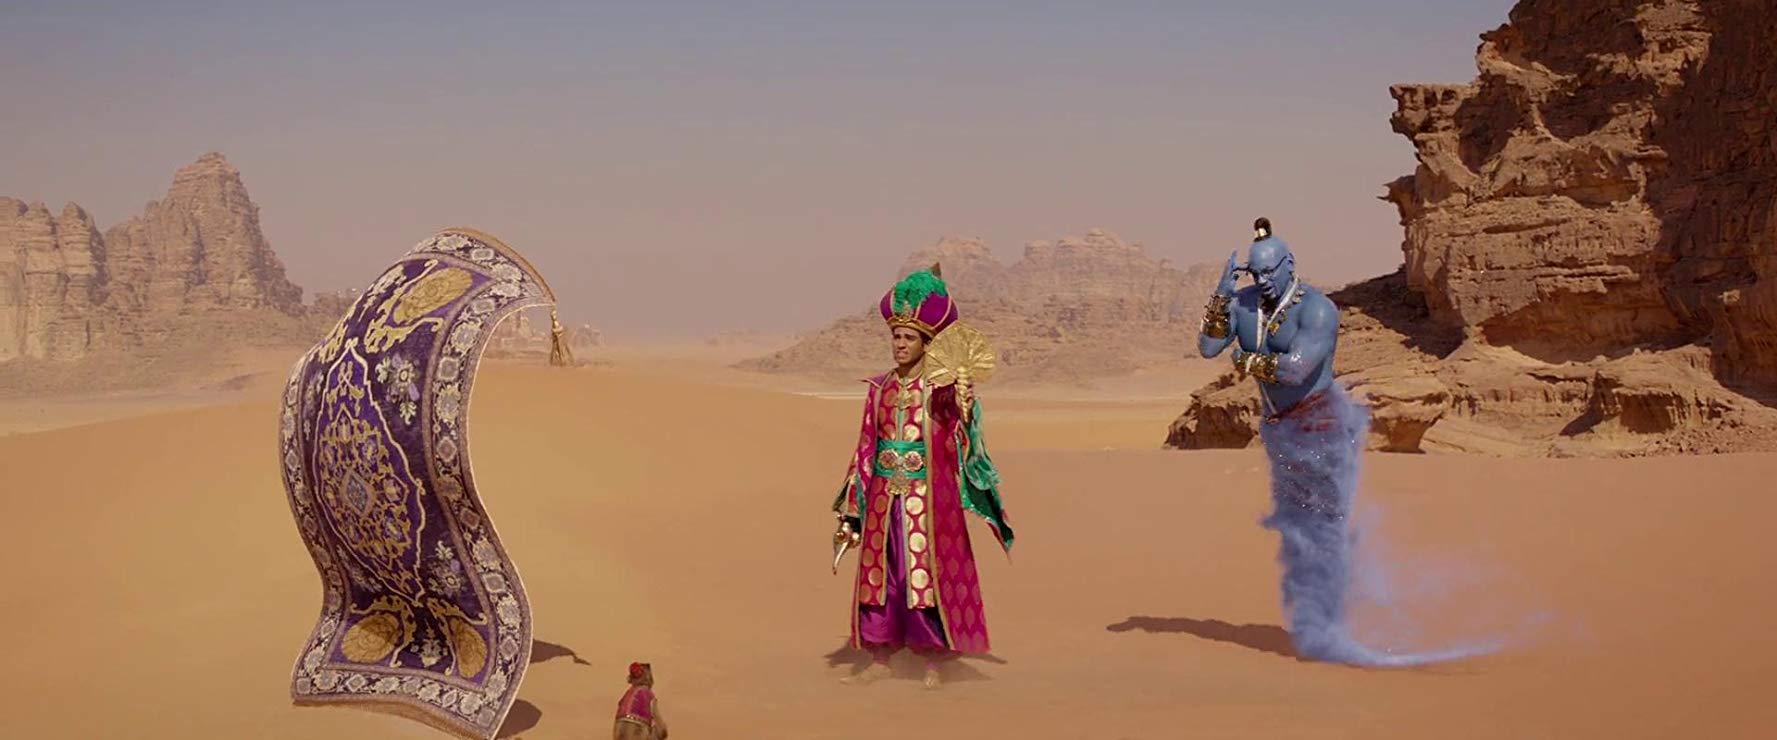 مشاهدة فيلم Aladdin (2019) مترجم HD اون لاين